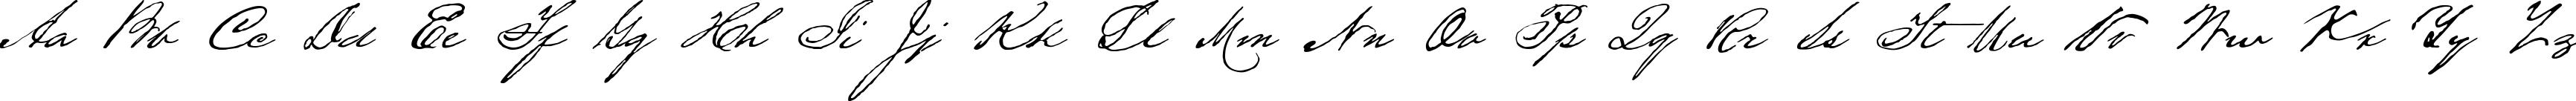 Пример написания английского алфавита шрифтом HoustonPen